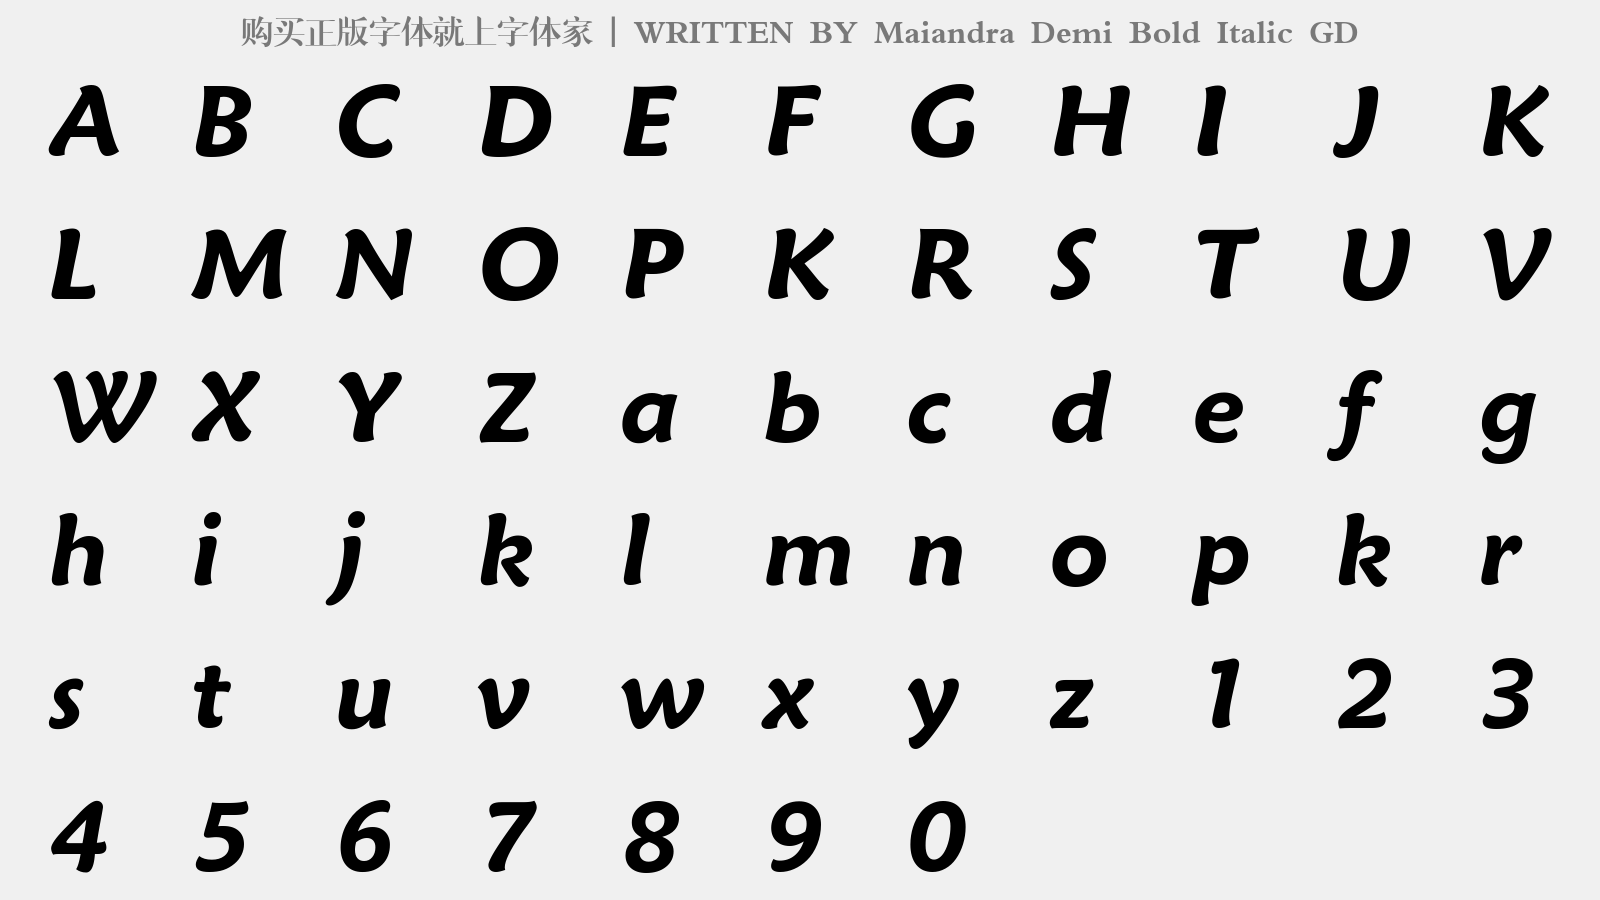 Maiandra Demi Bold Italic GD - 大写字母/小写字母/数字